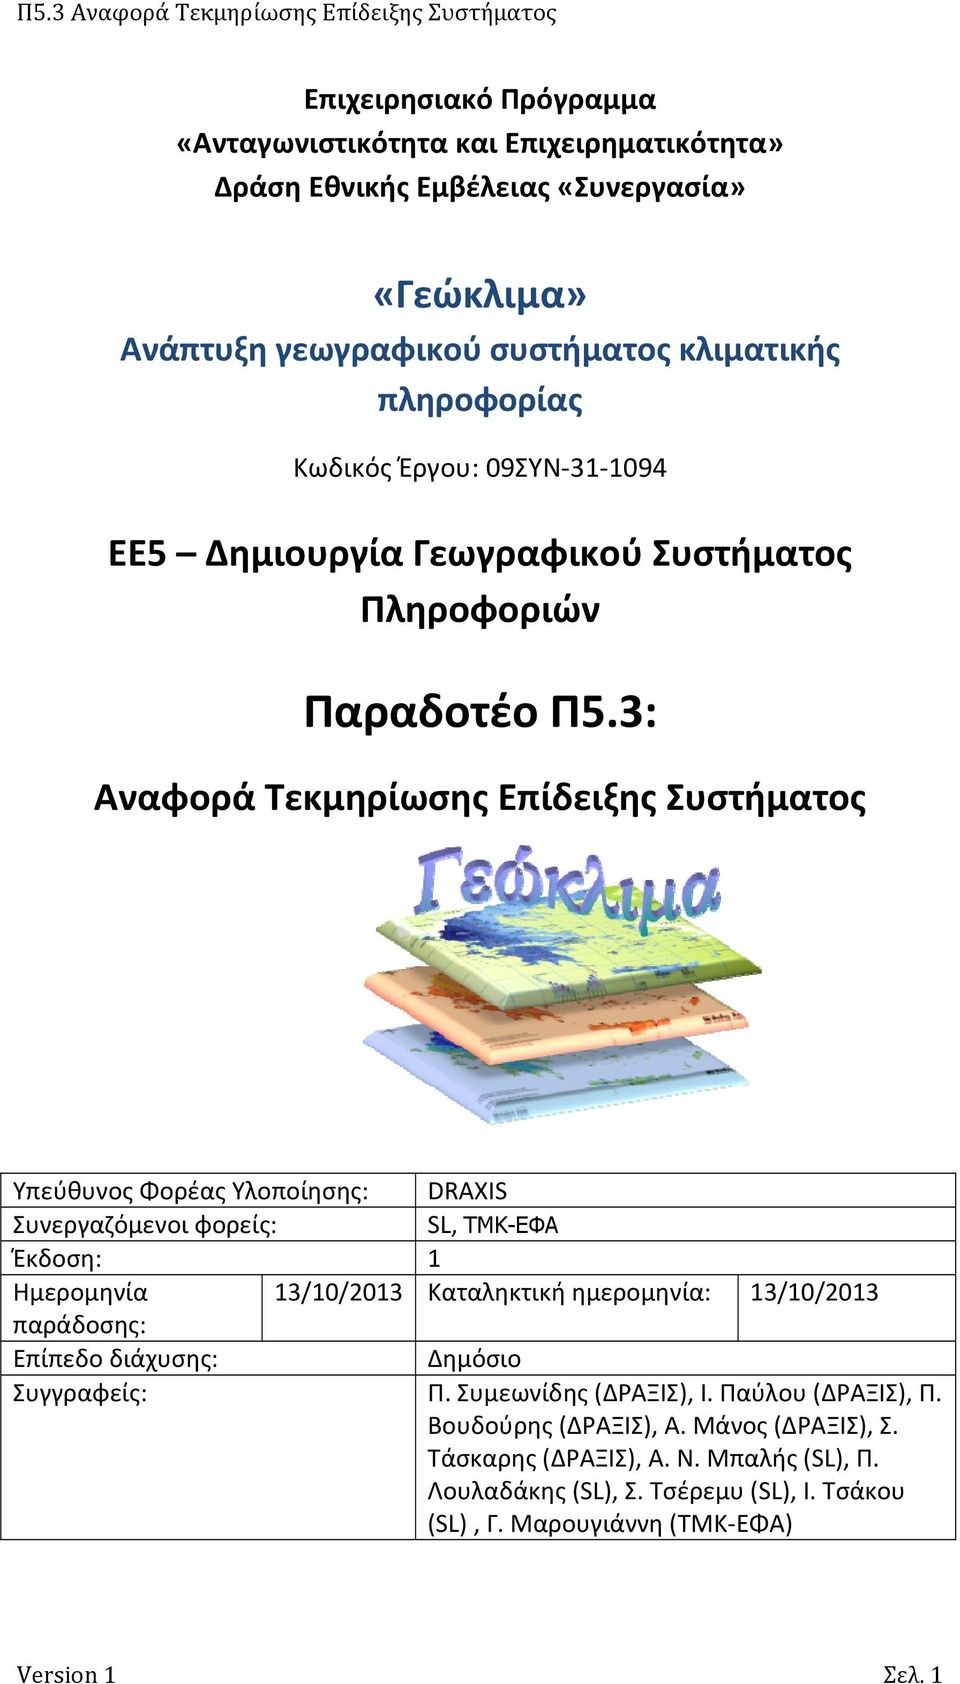 3: Αναφορά Τεκμηρίωσης Επίδειξης Συστήματος Υπεύθυνος Φορέας Υλοποίησης: DRAXIS Συνεργαζόμενοι φορείς: SL, ΤΜΚ-ΕΦΑ Έκδοση: 1 Ημερομηνία 13/10/2013 Καταληκτική ημερομηνία: